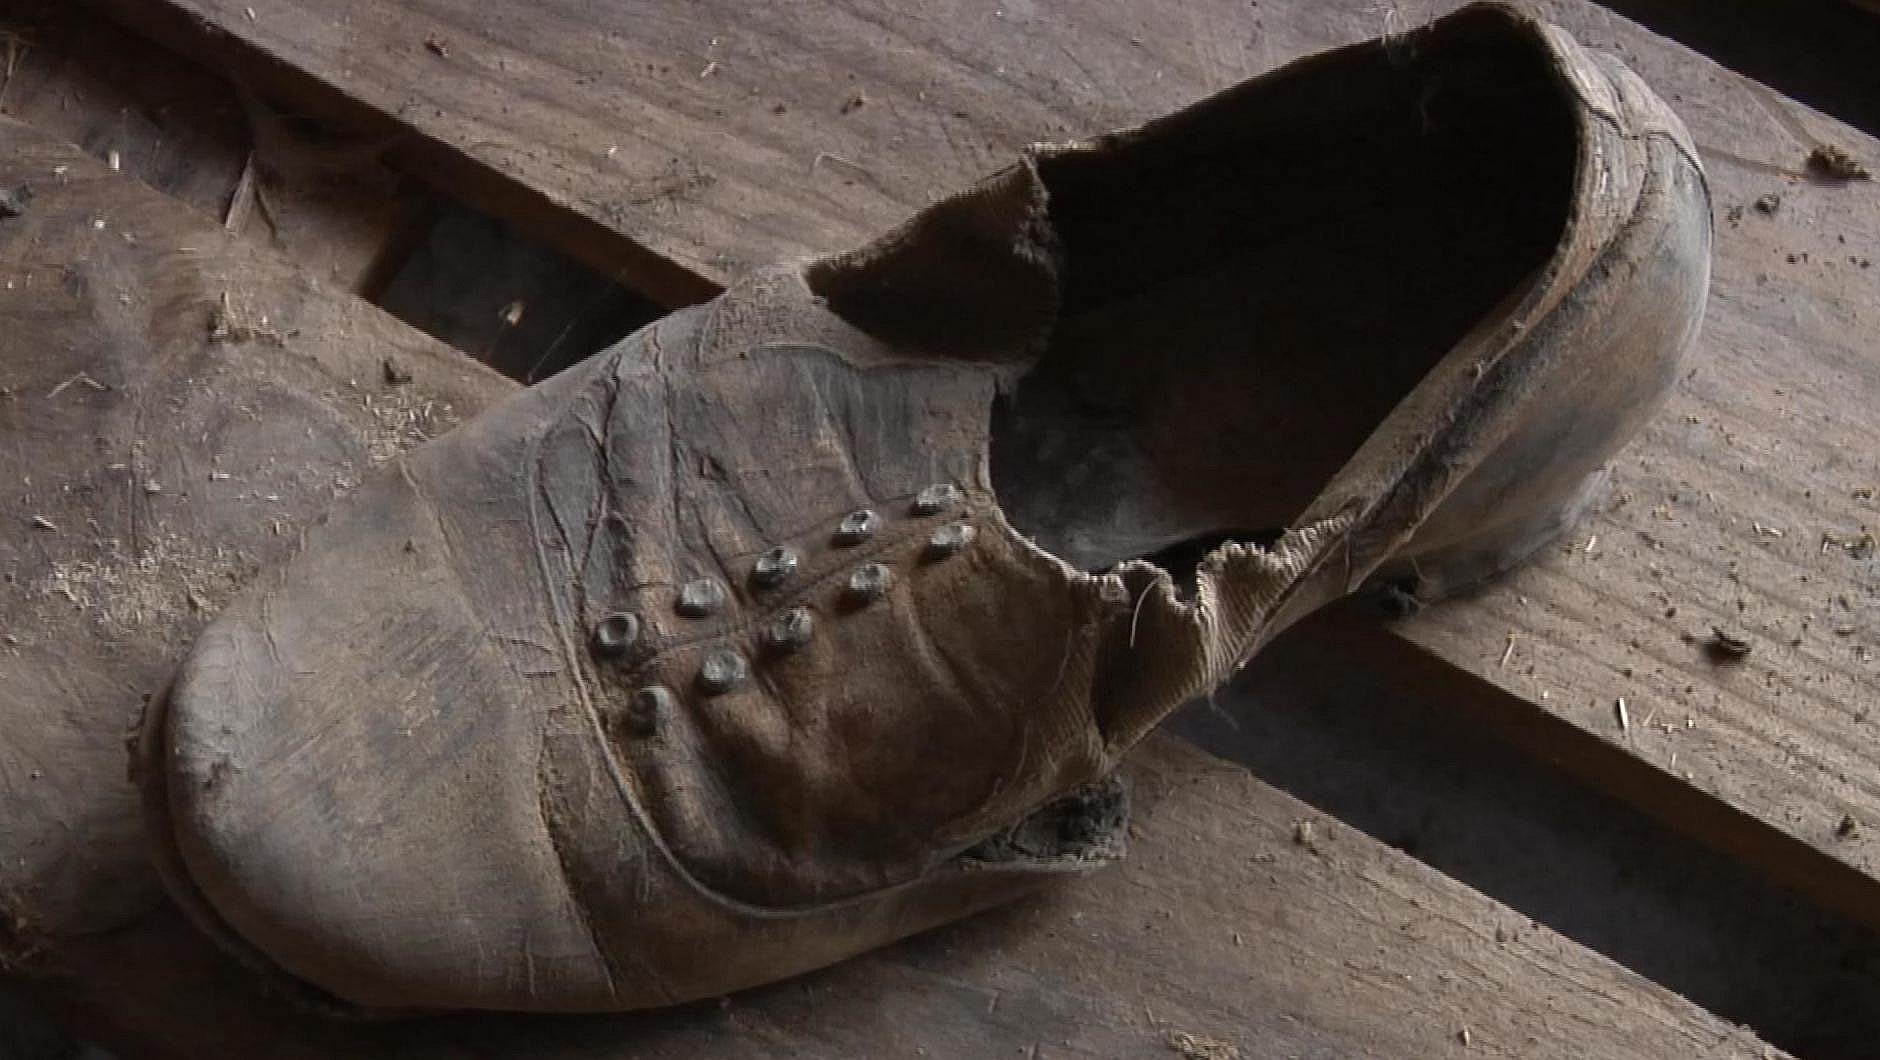 Retouch Slange ganske enkelt Over 100 år gammel sko på loftet viste sig at være lykkebringende | TV2 ØST